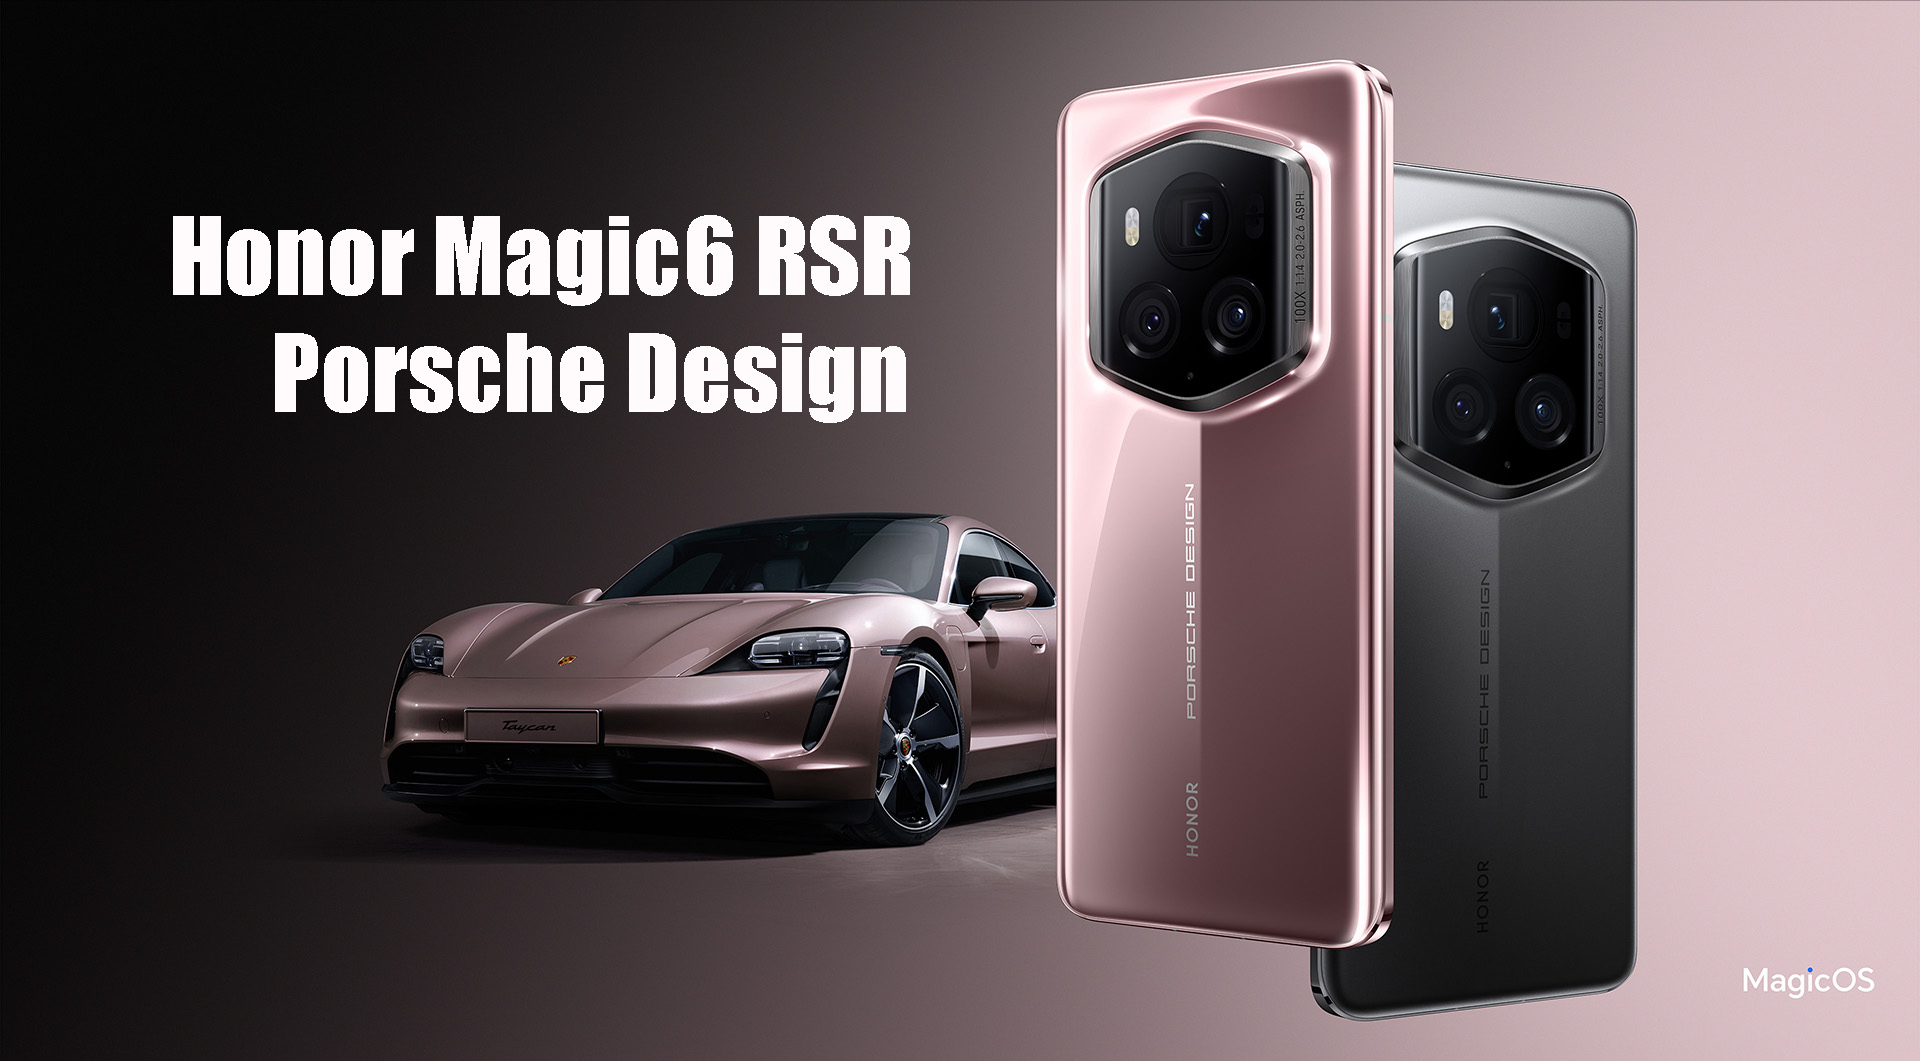 honor-magic6-rsr-porsche-design-01